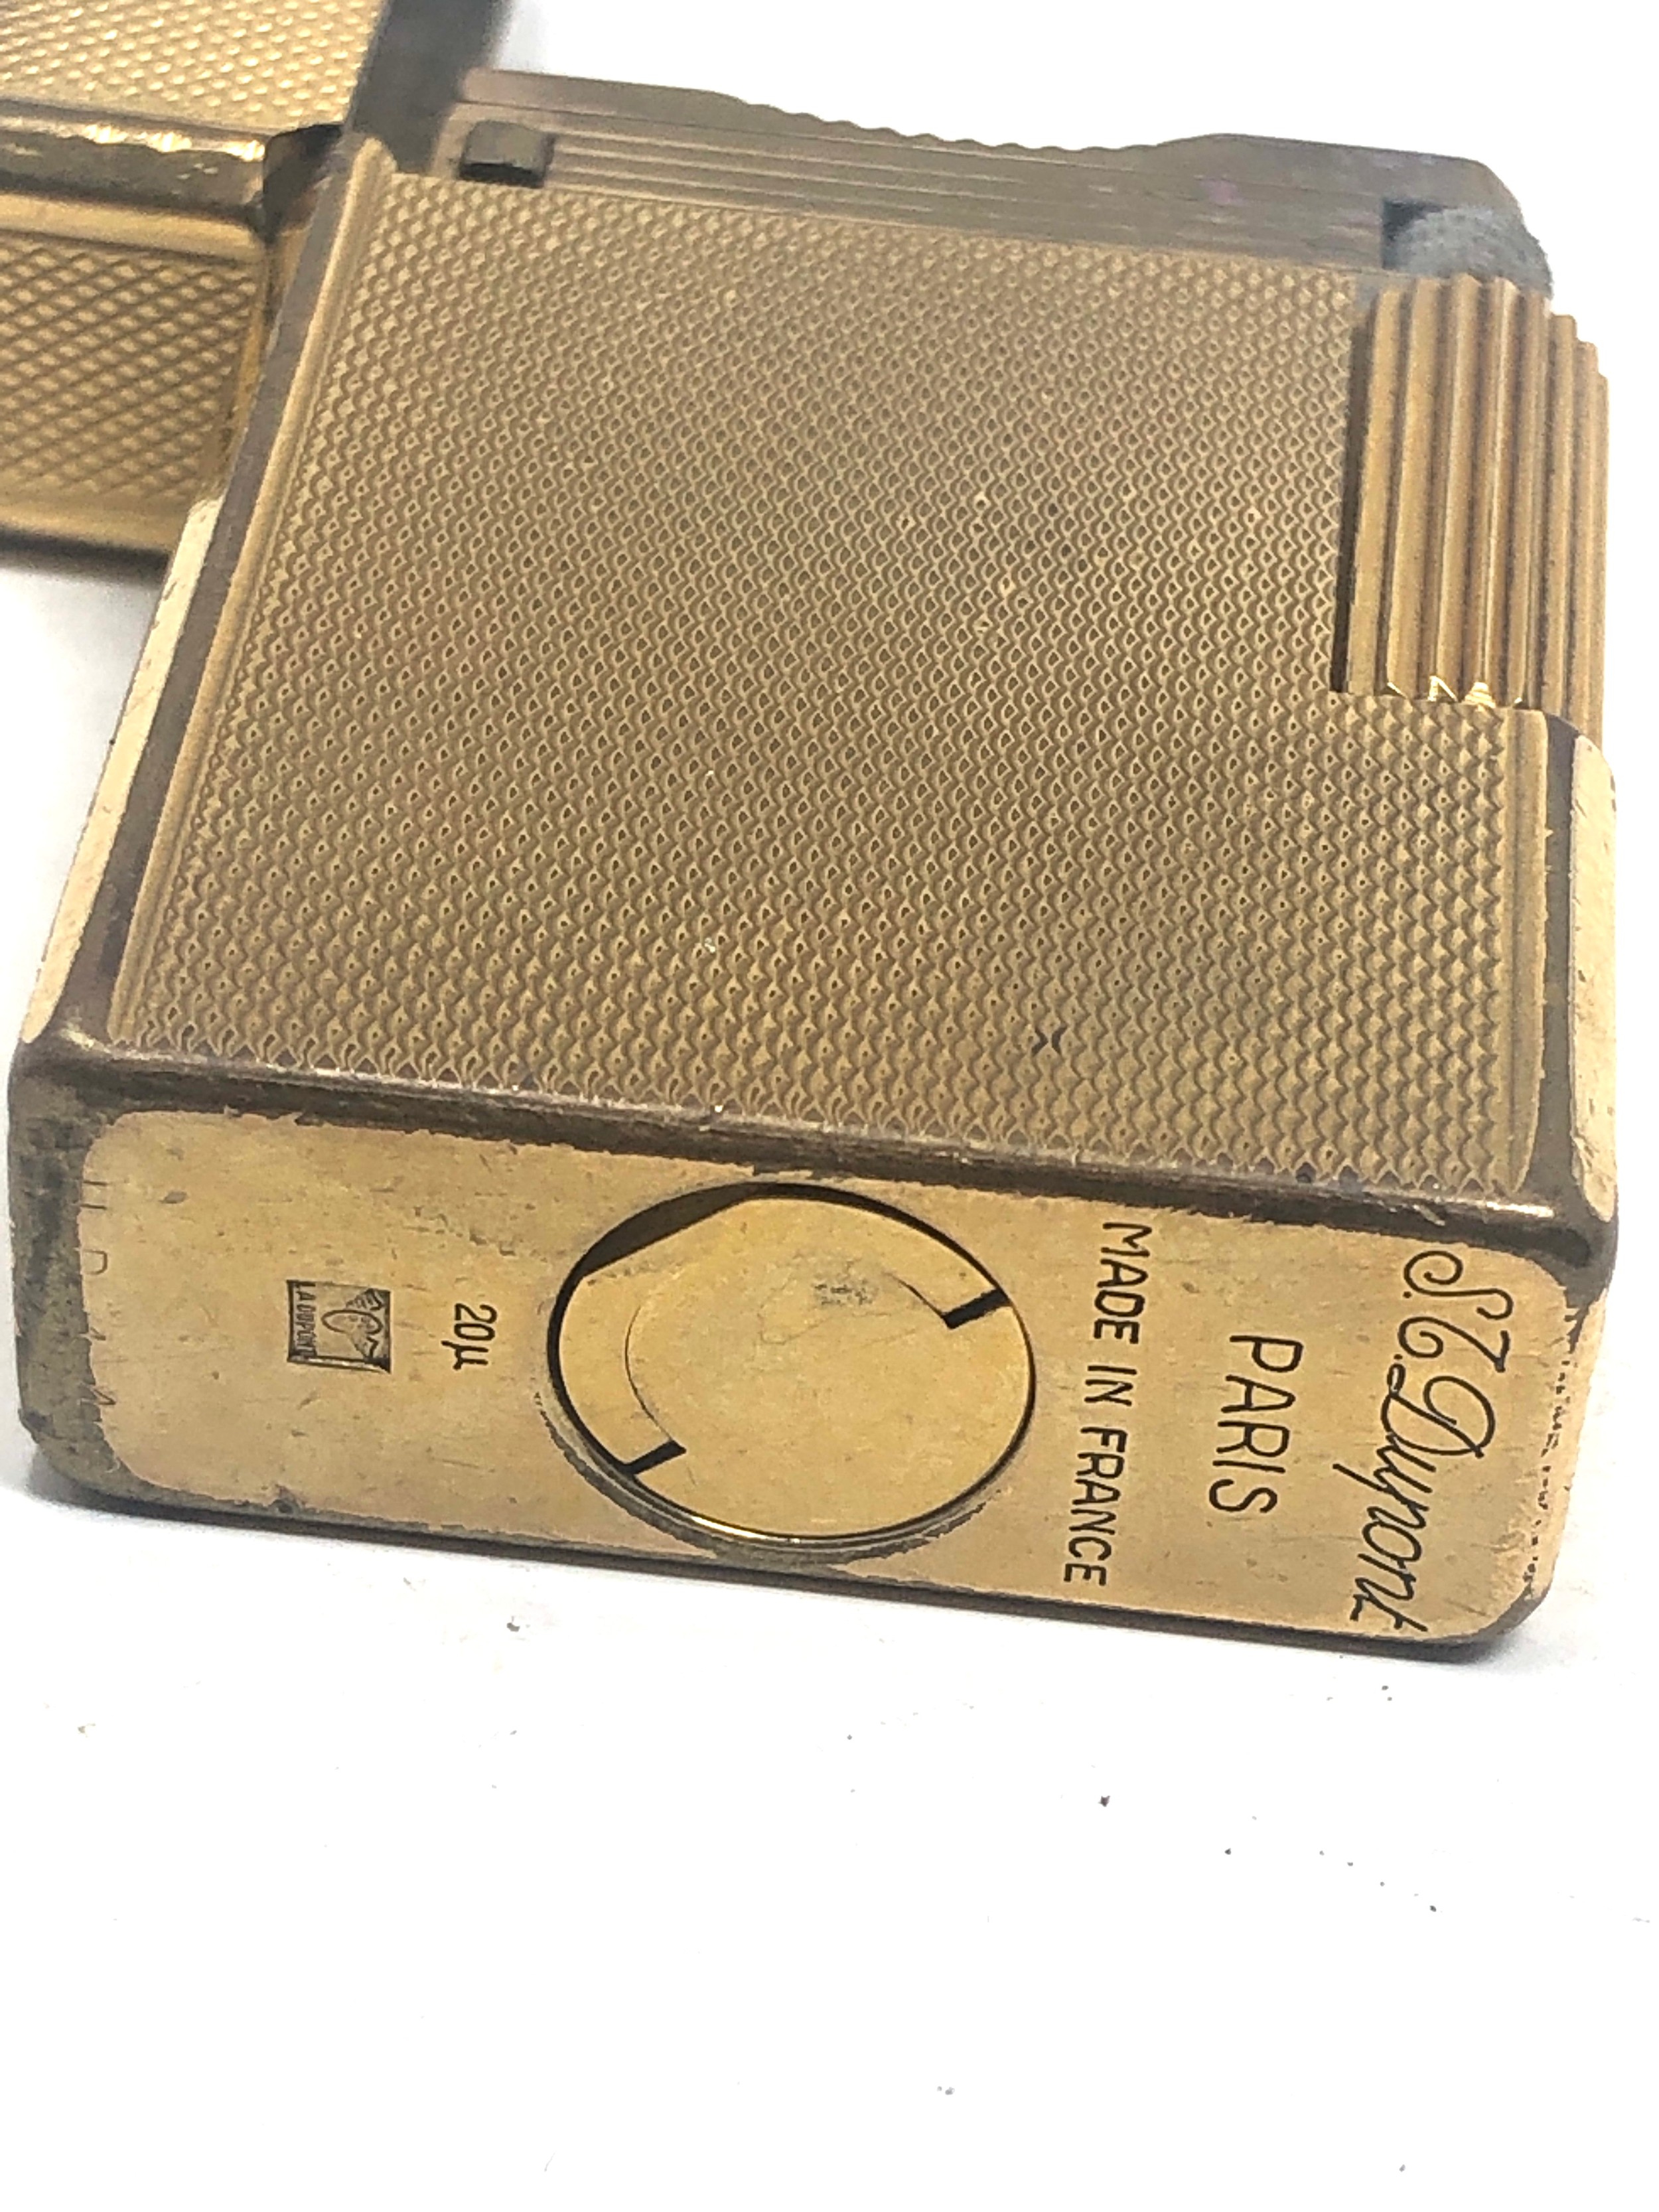 Vintage dupont cigarette lighter - Image 3 of 3